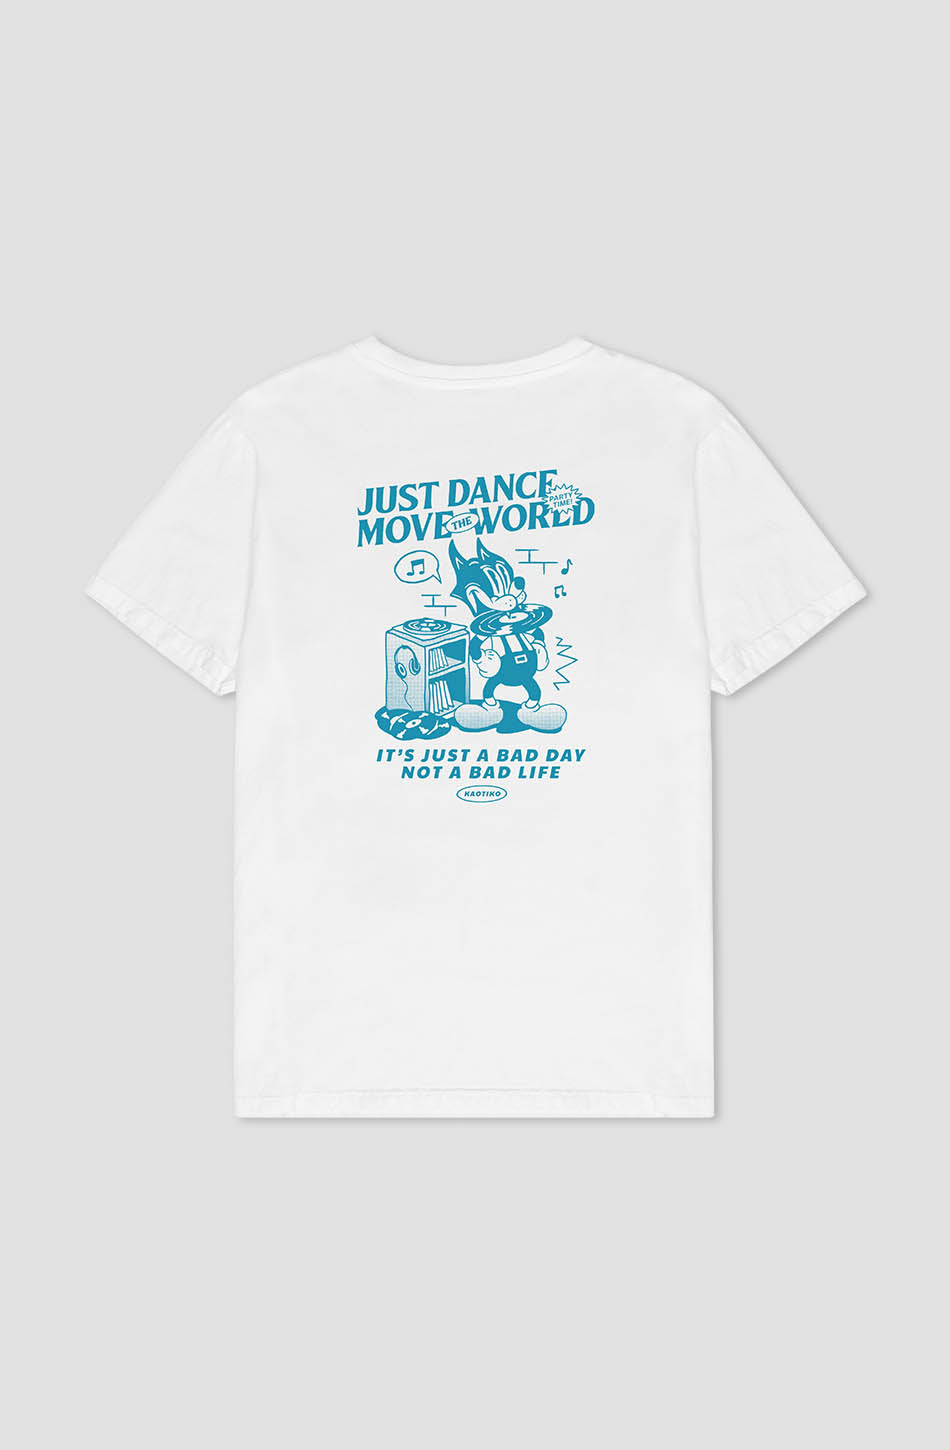 Verwaschenes weißes Just Dance Cat Music T-Shirt